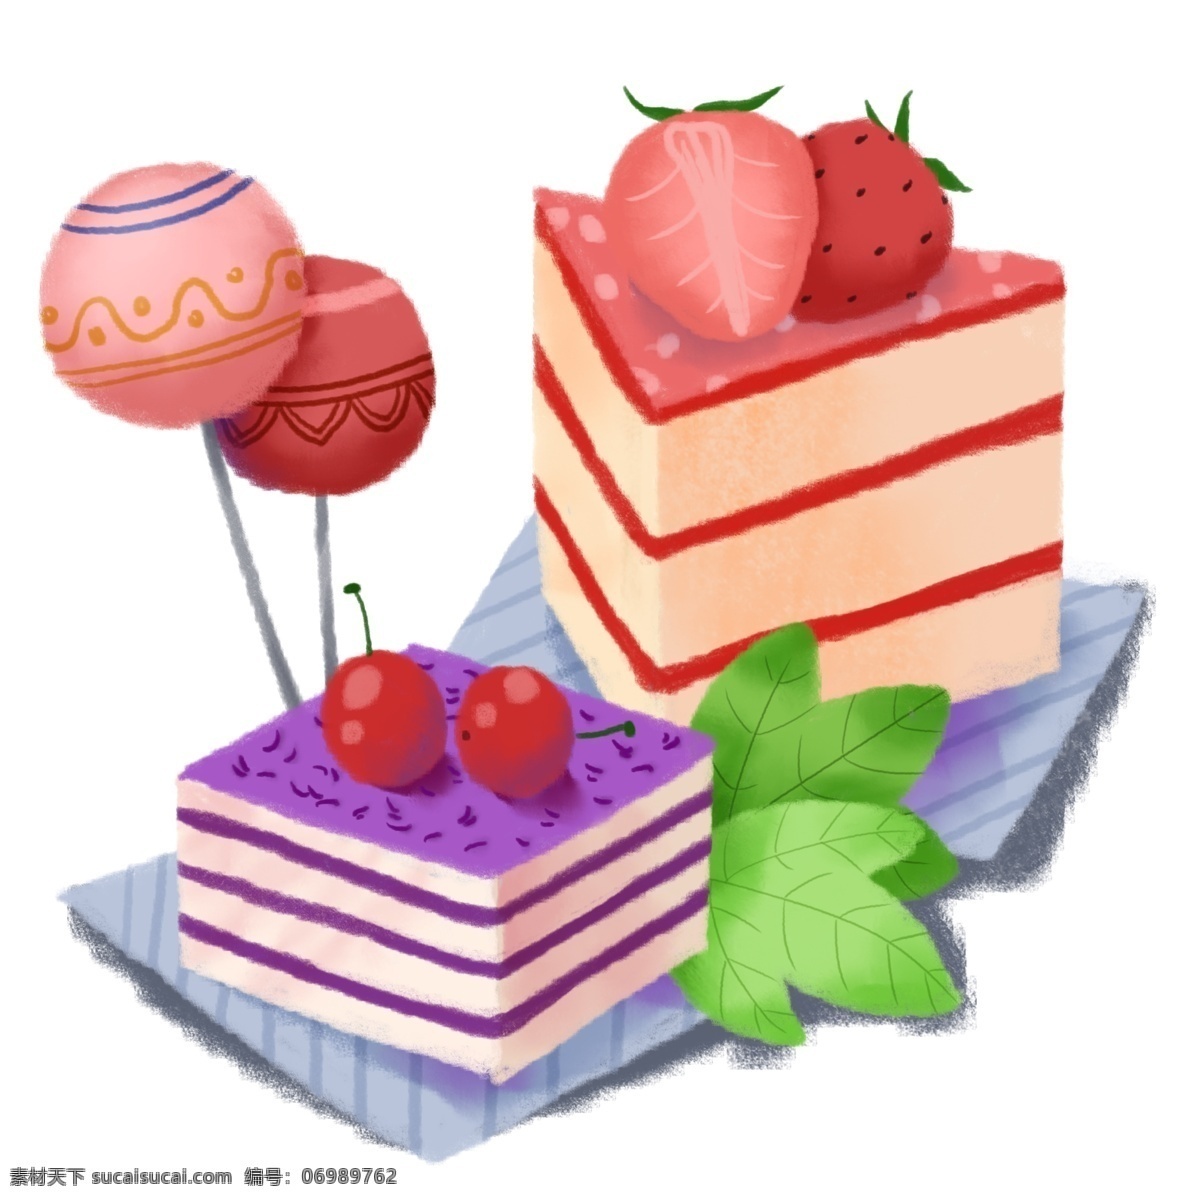 手绘 甜点 樱桃 草莓 蛋糕 棒棒糖 绿叶 甜食 卡路里 美食 生活 粉色 单独分层 食欲 健康 少女心 少女